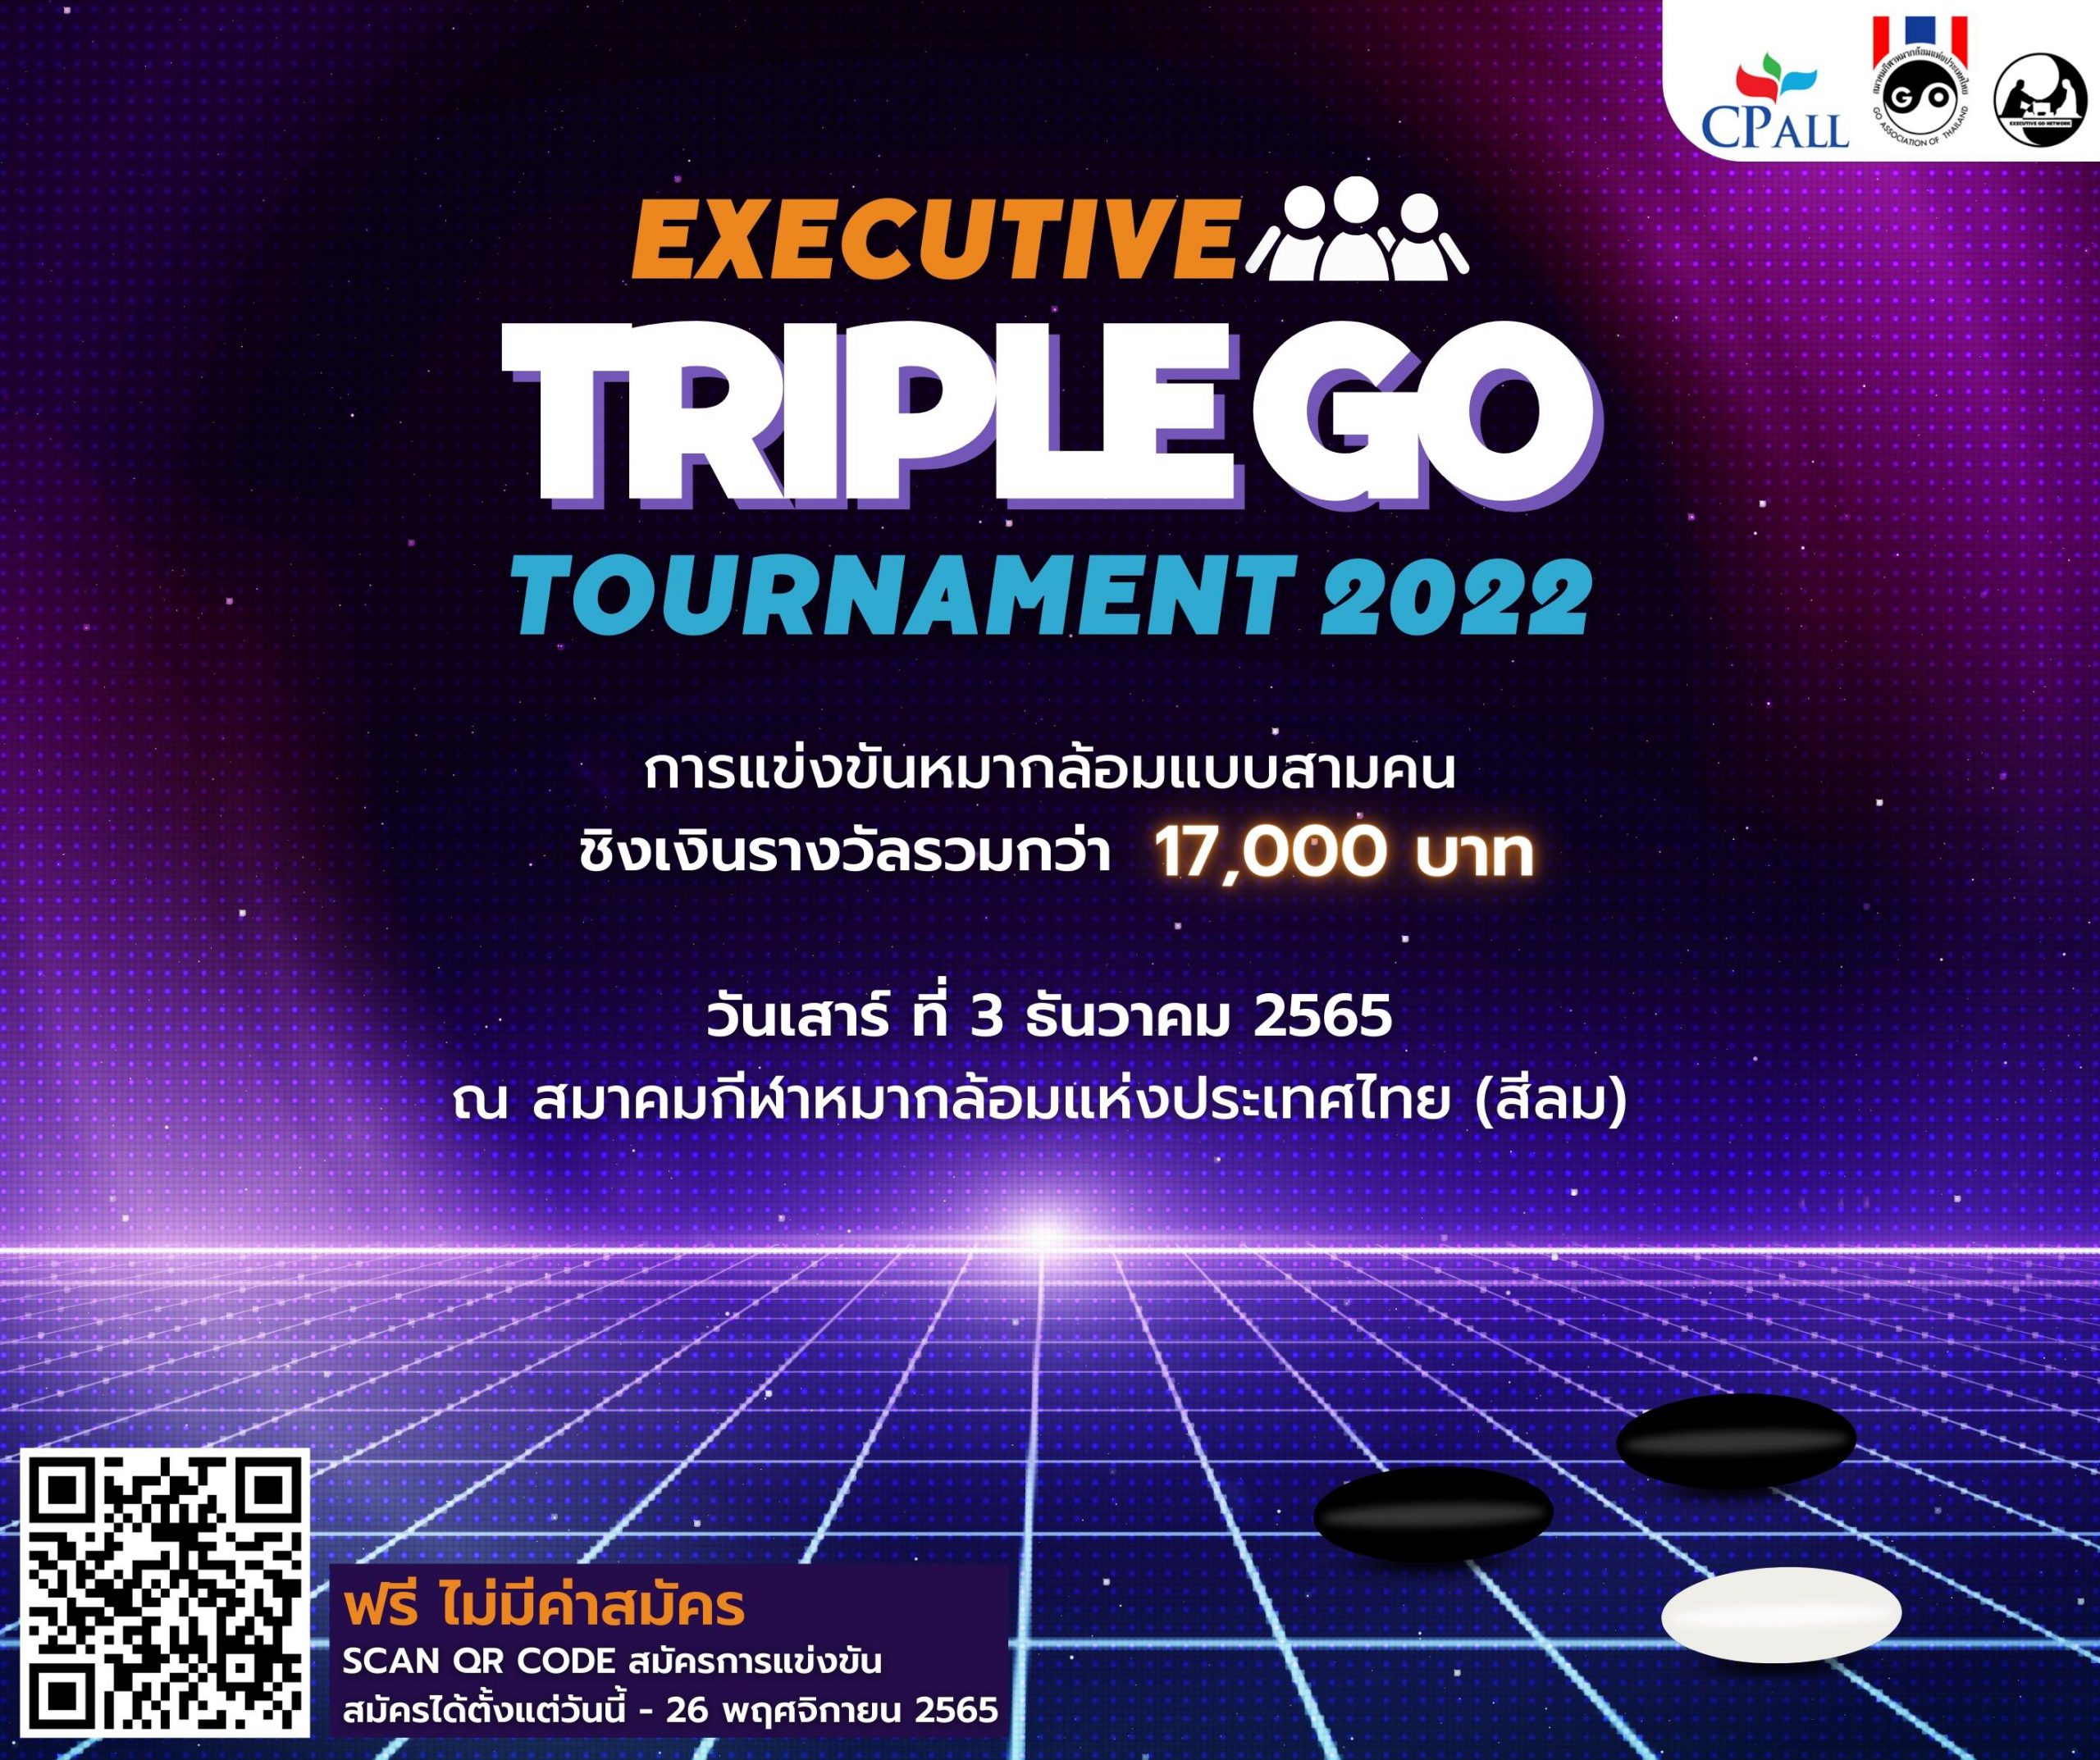 ขอเชิญร่วมแข่งขันหมากล้อม Executive Triple Go Tournament 2022 (ครั้งที่ 10)